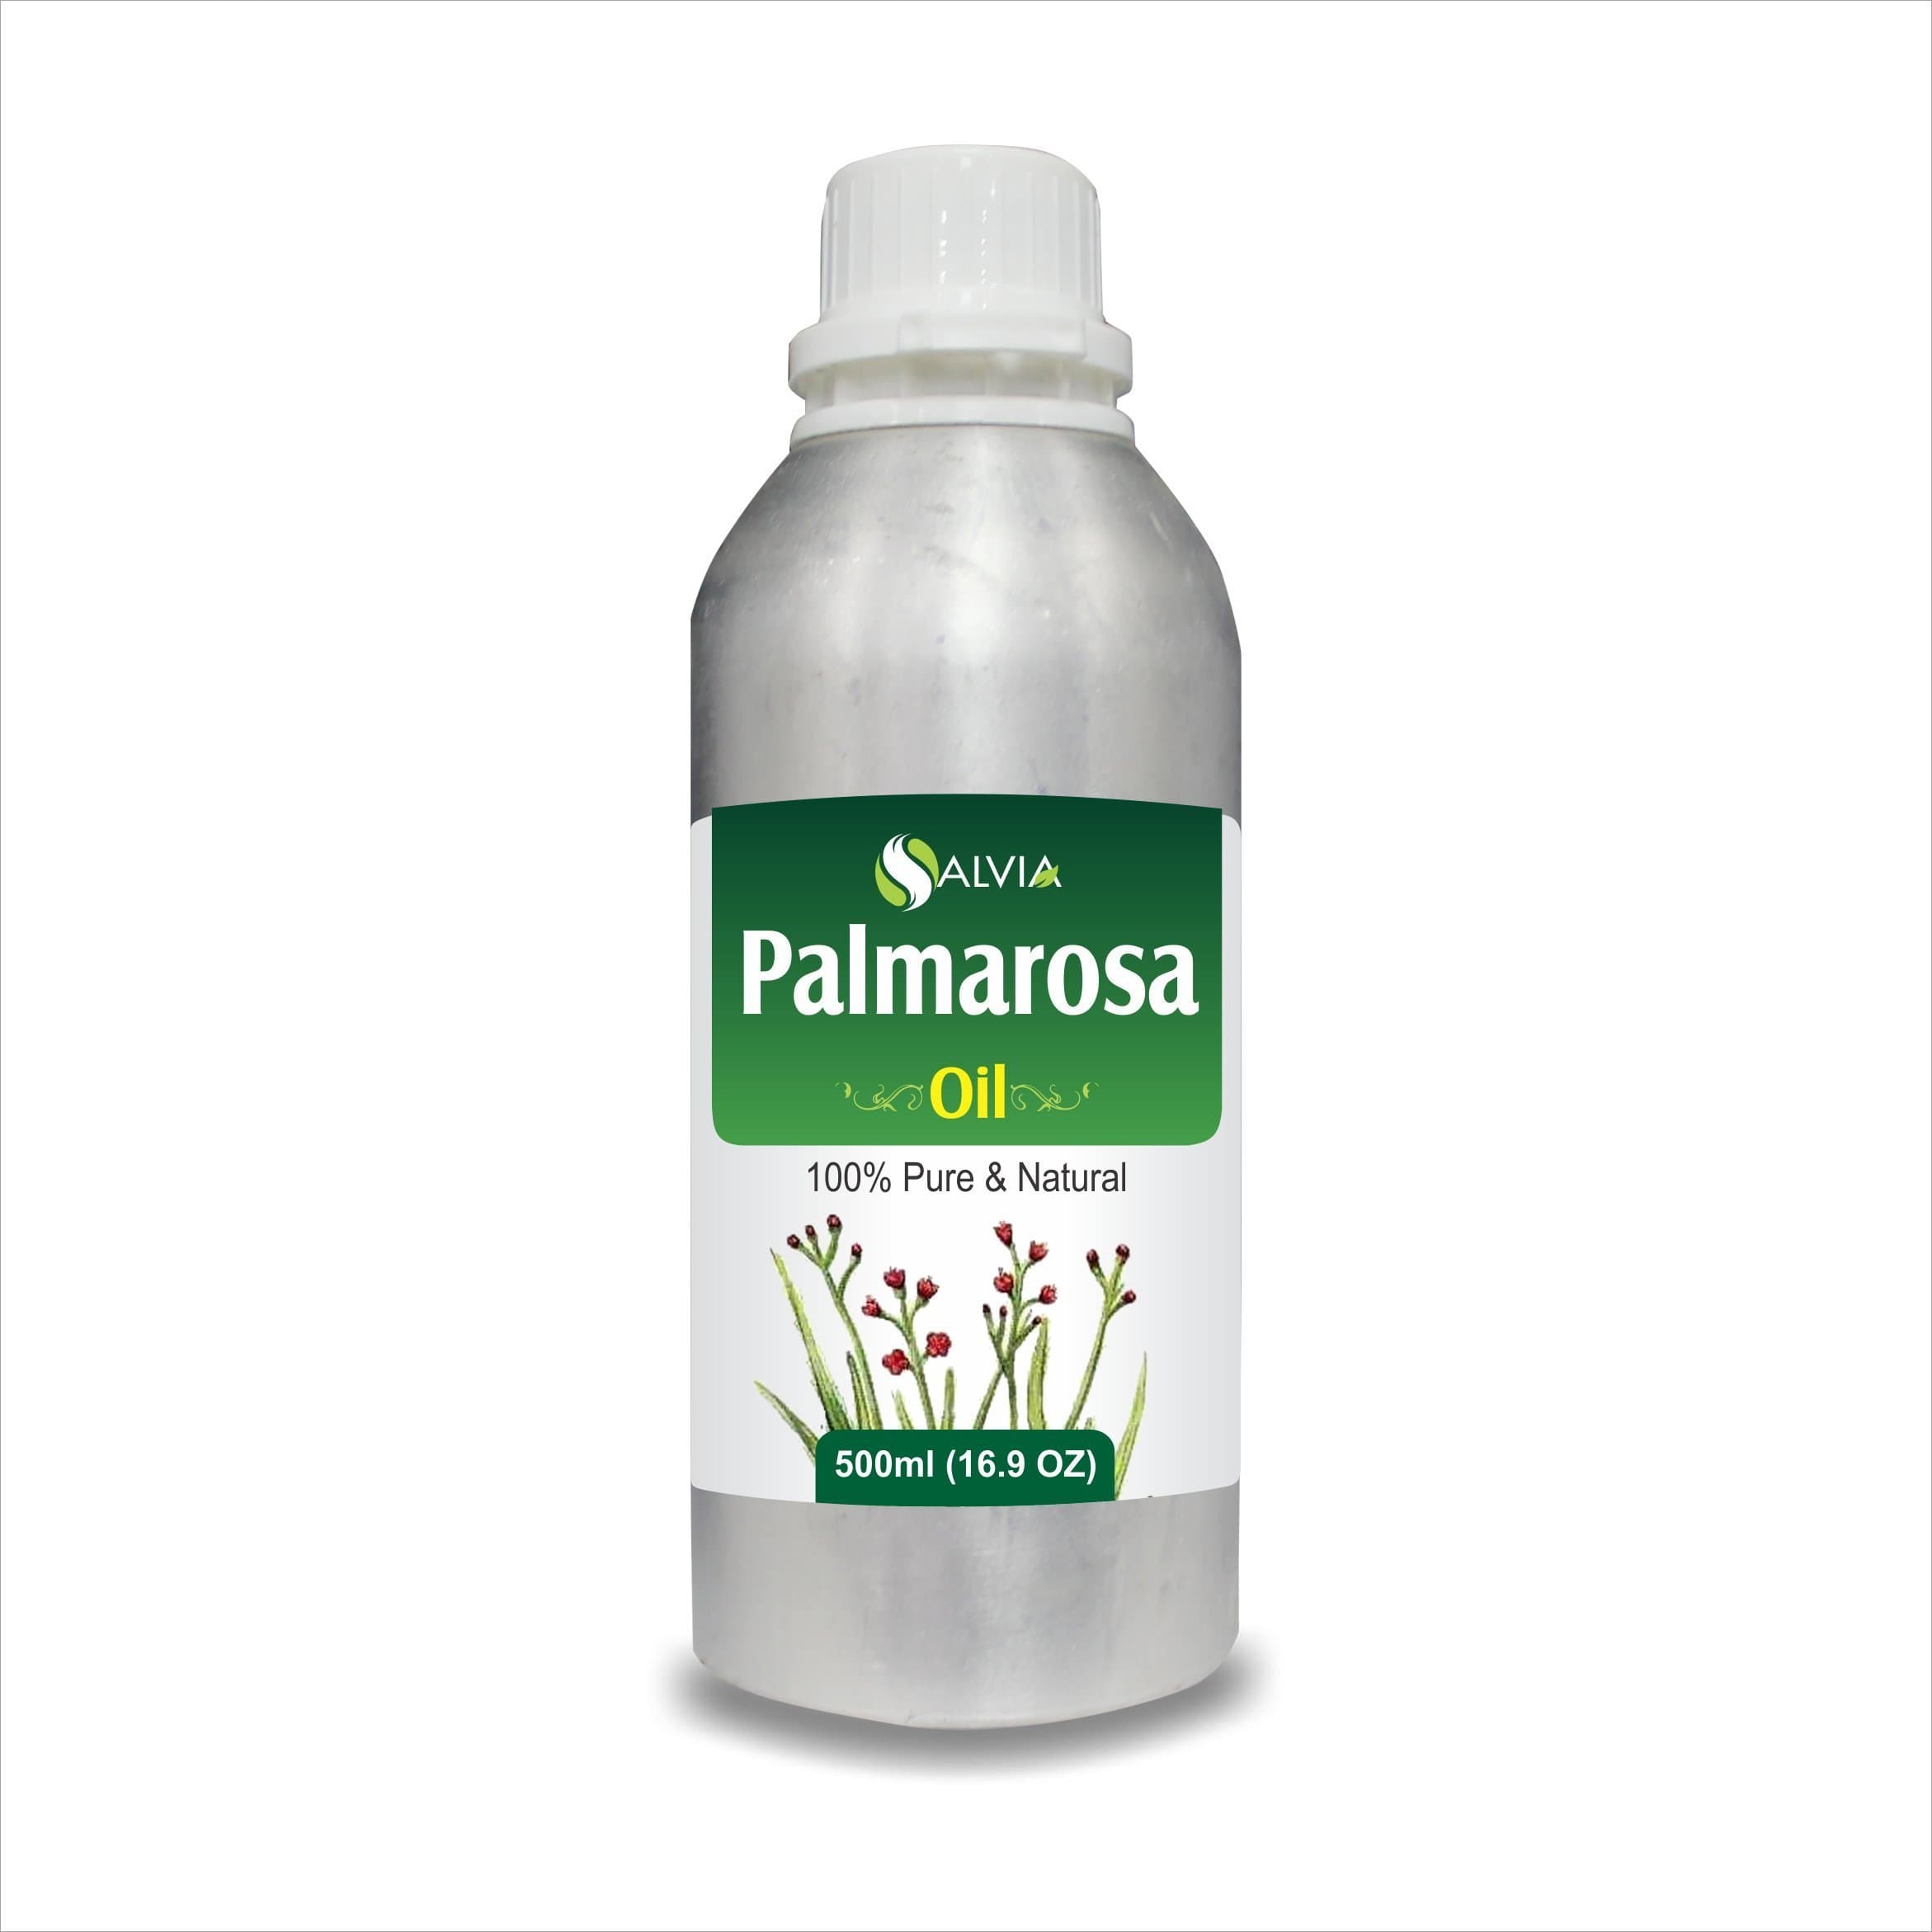 palmarosa oil uses